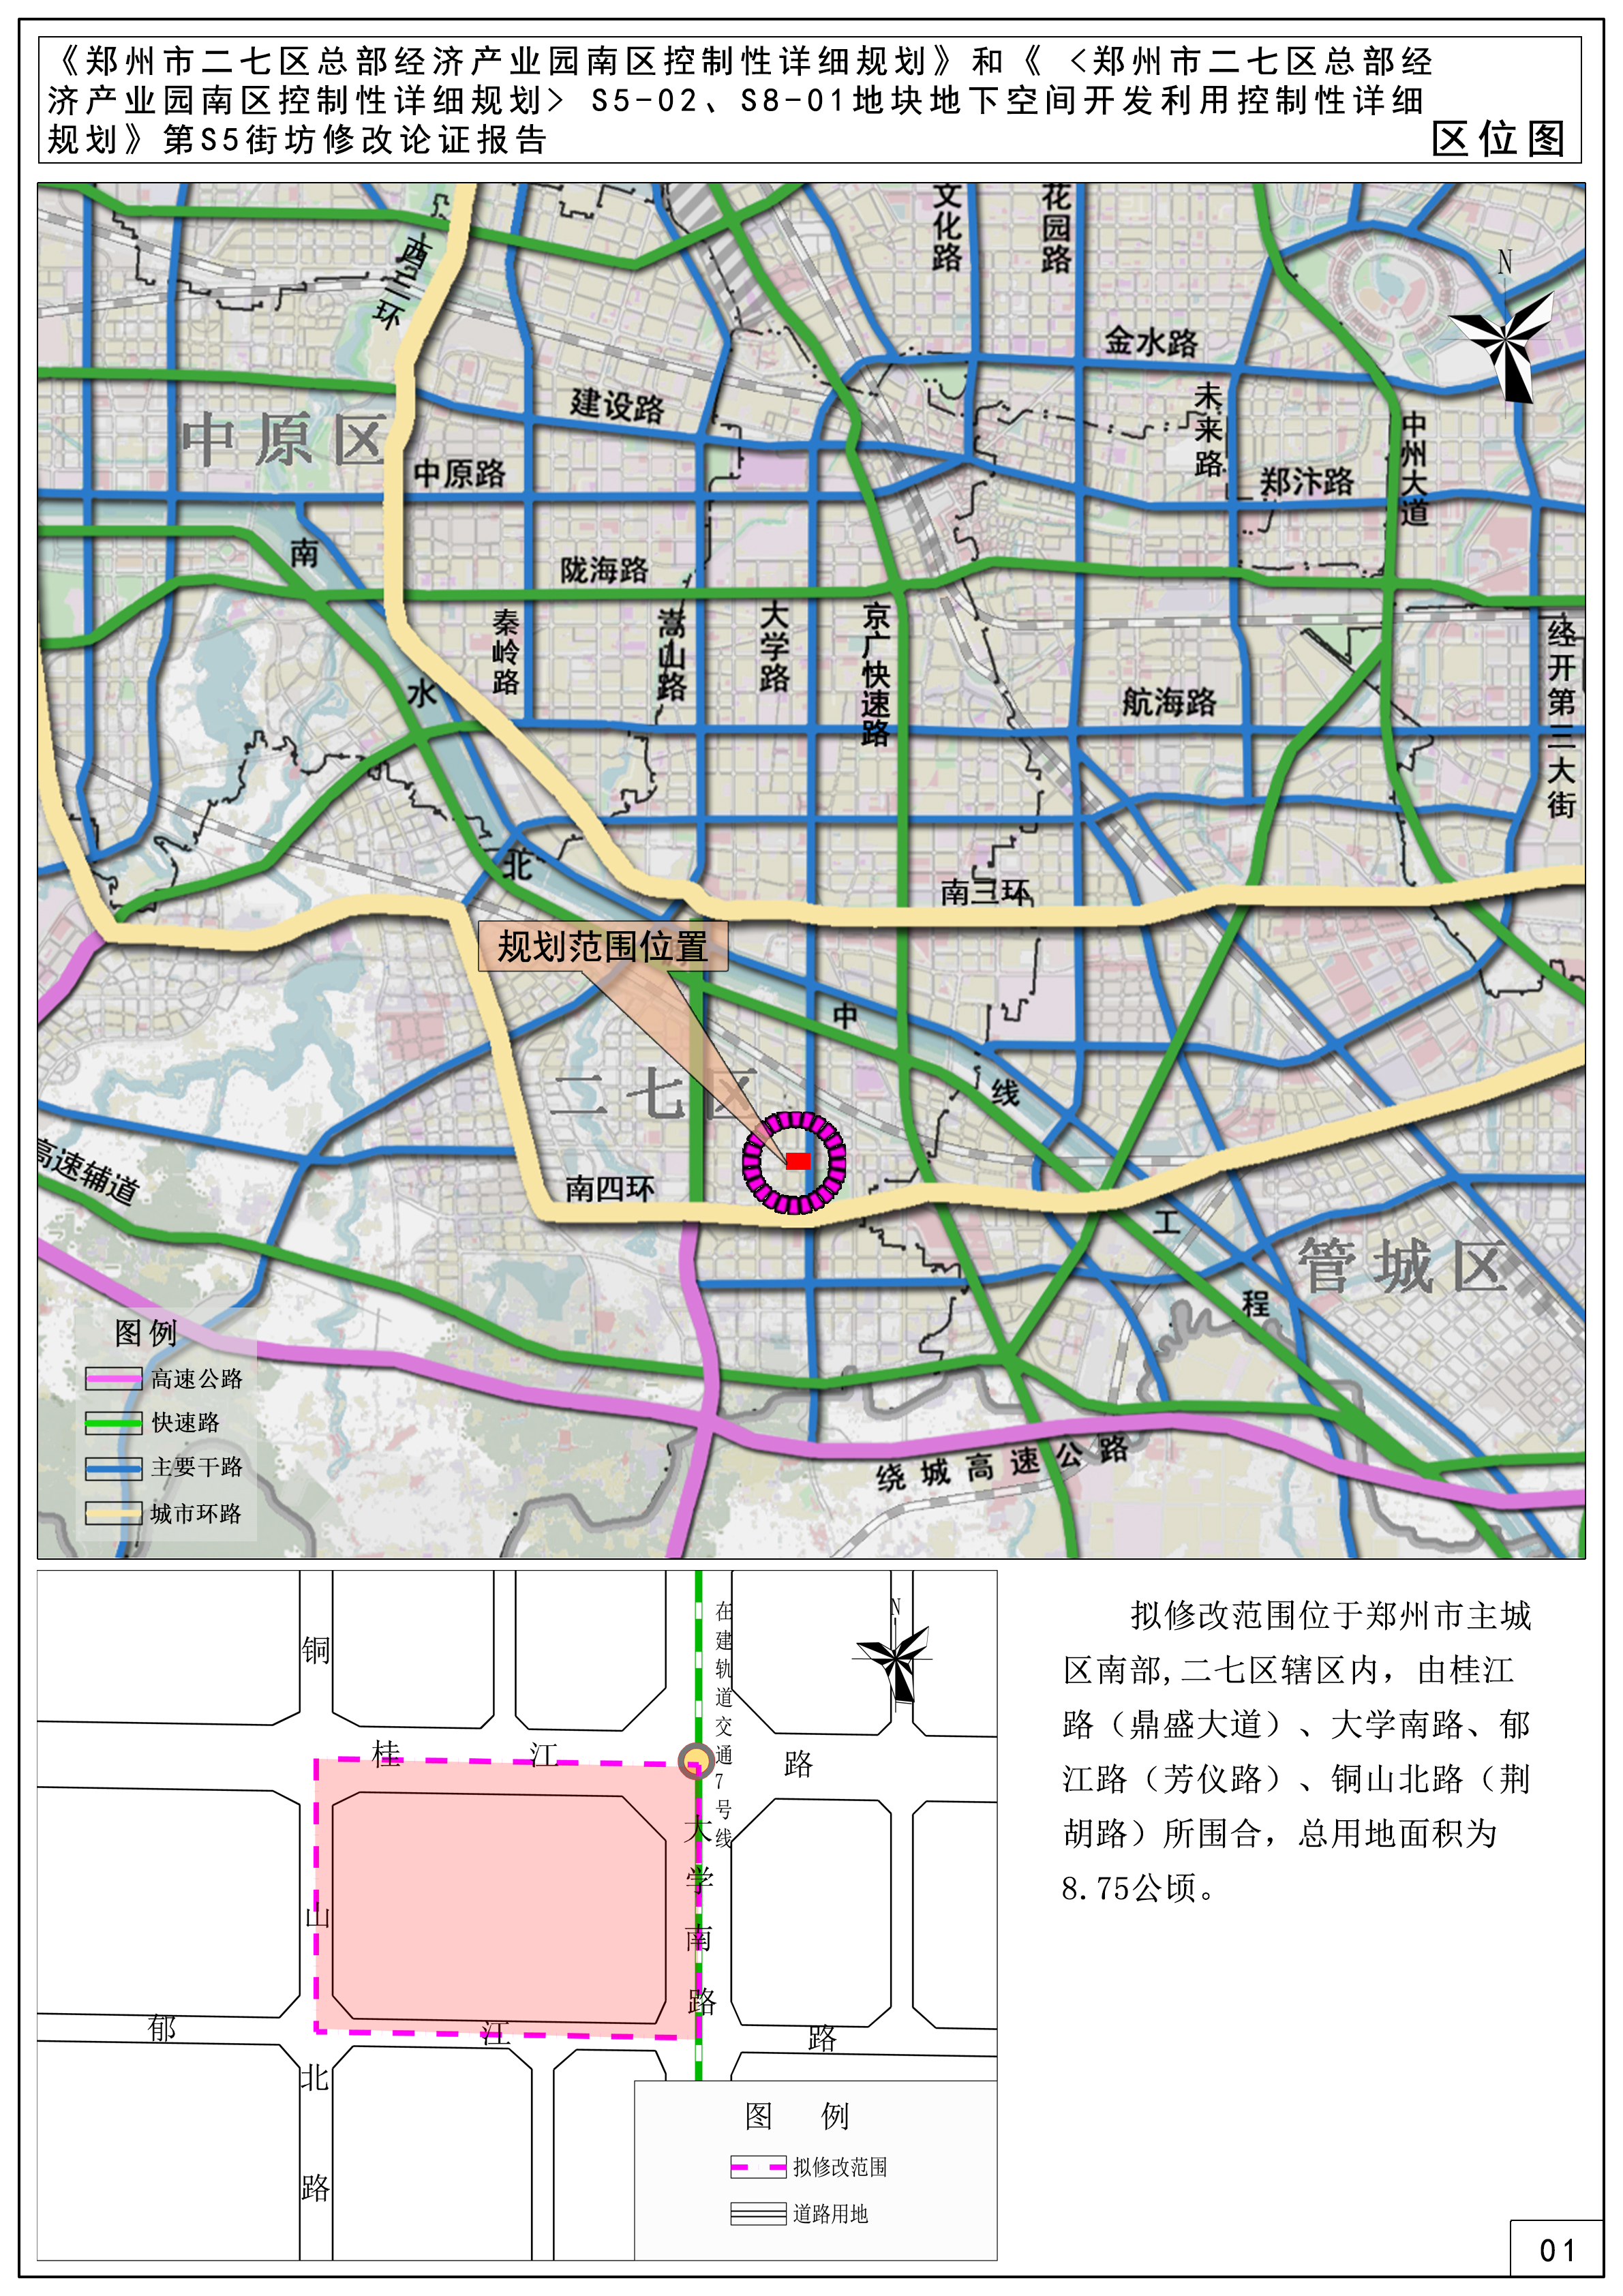 《郑州市二七区总部经济产业园南区控制性详细规划》和《  S5-02、S8-01地块地下空间开发利用控制性详细规划》第S5街坊修改论证报告